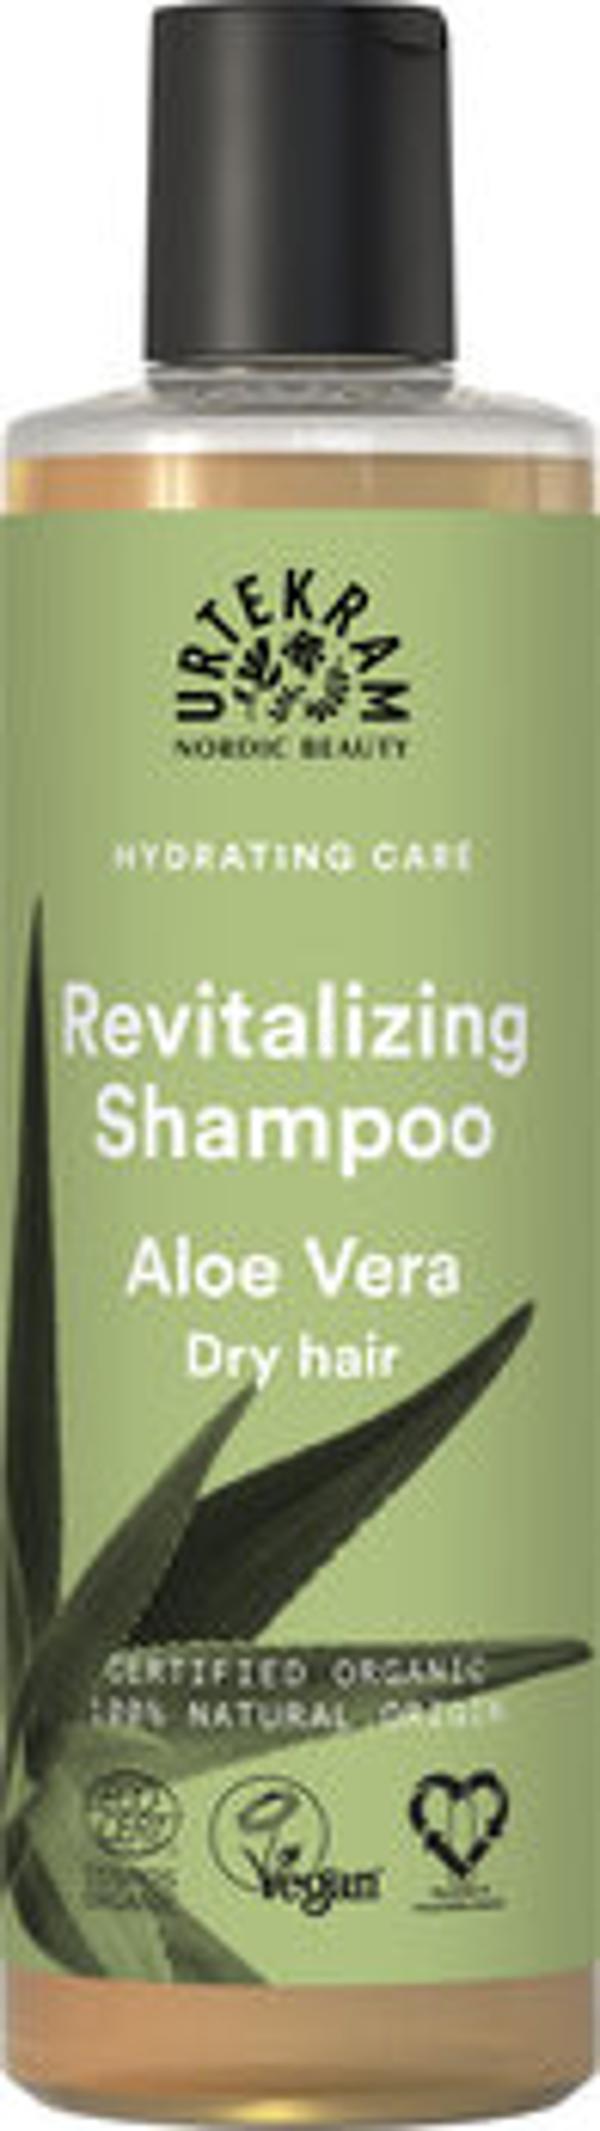 Produktfoto zu Shampoo revitalizing  Aloe Vera